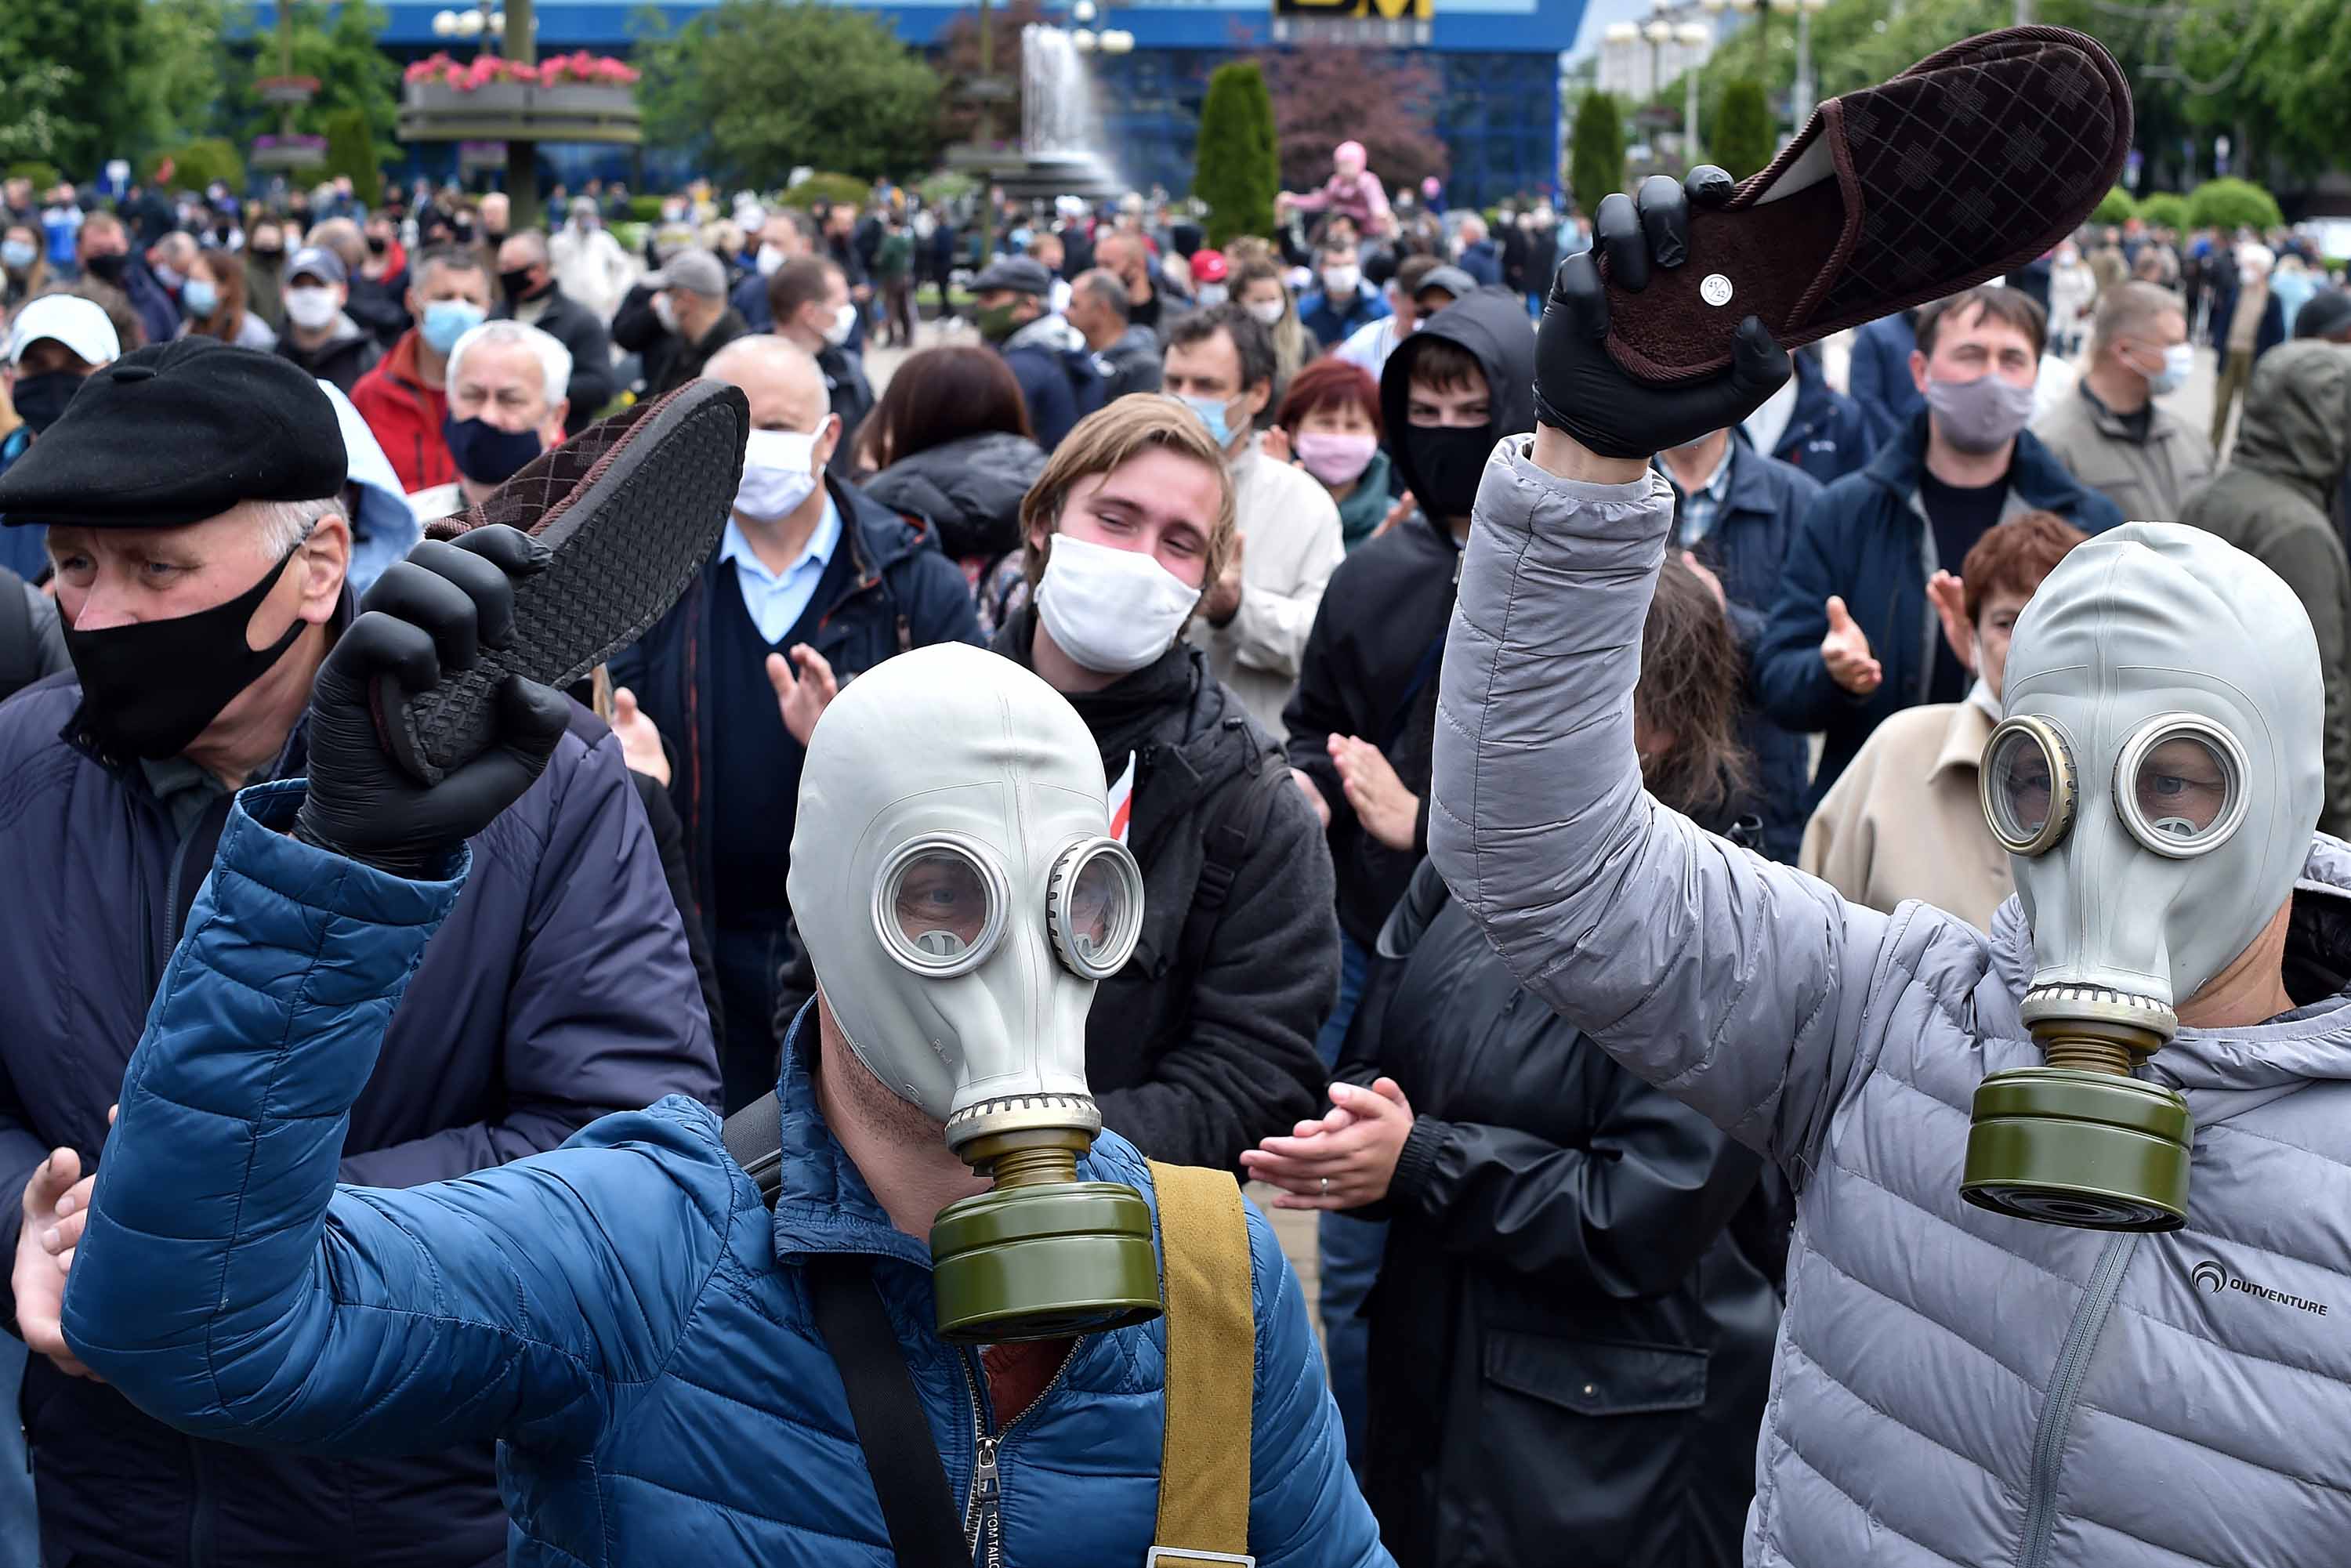 Ellenzéki tüntetők május 31-én Minszkben